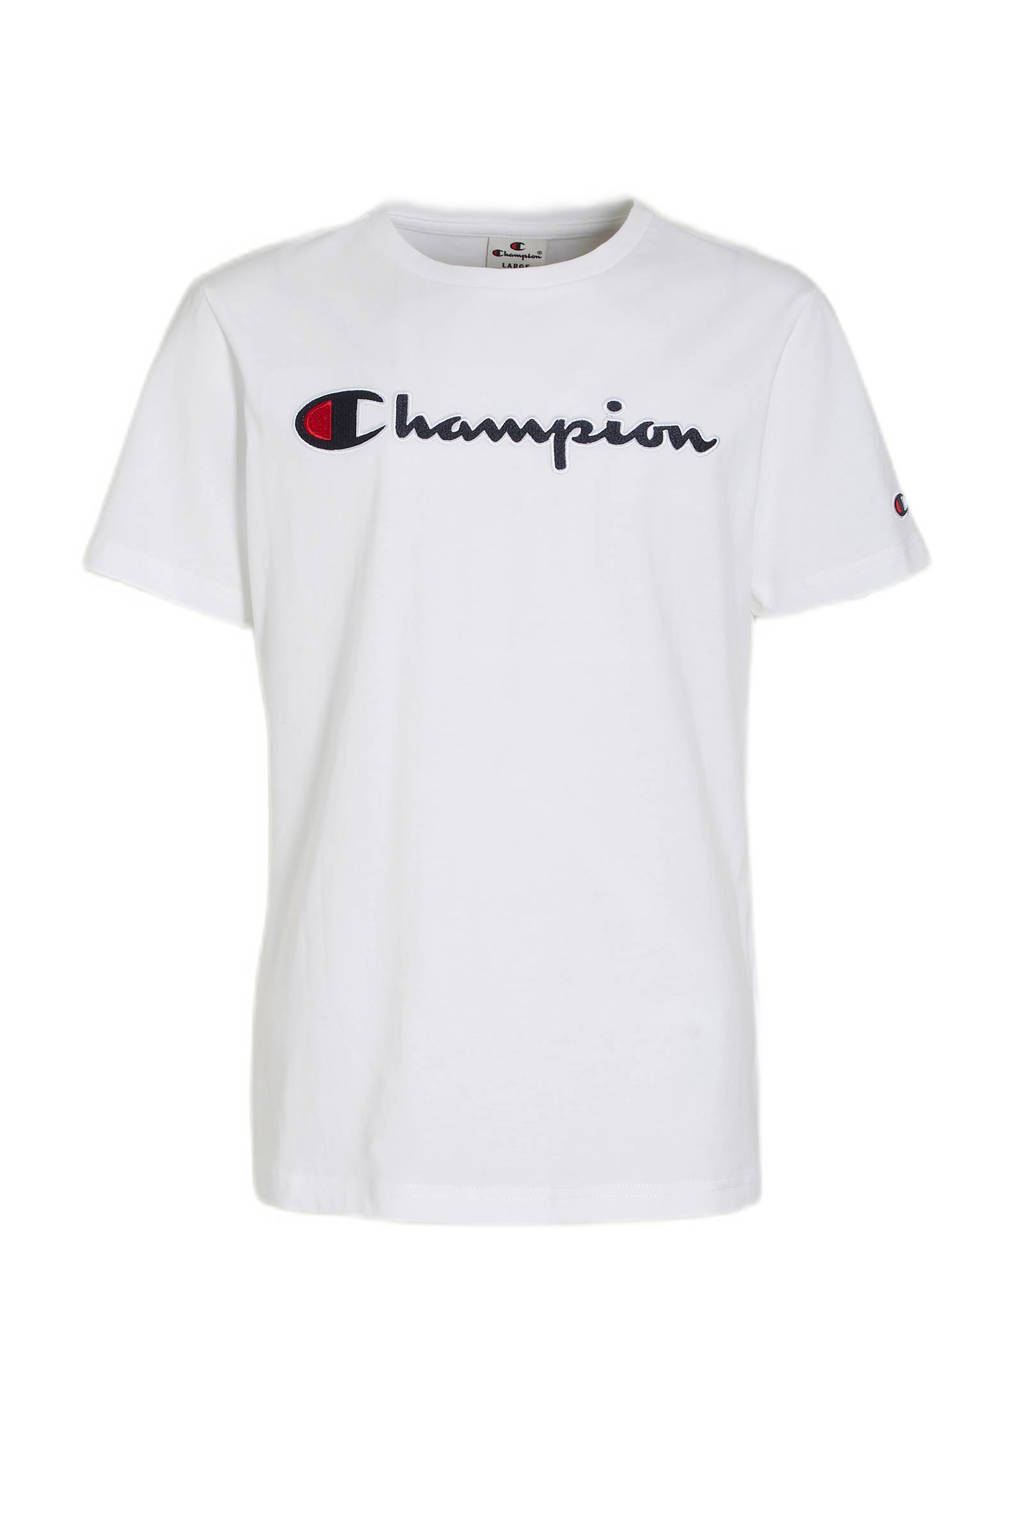 Champion T-shirt met logo wit